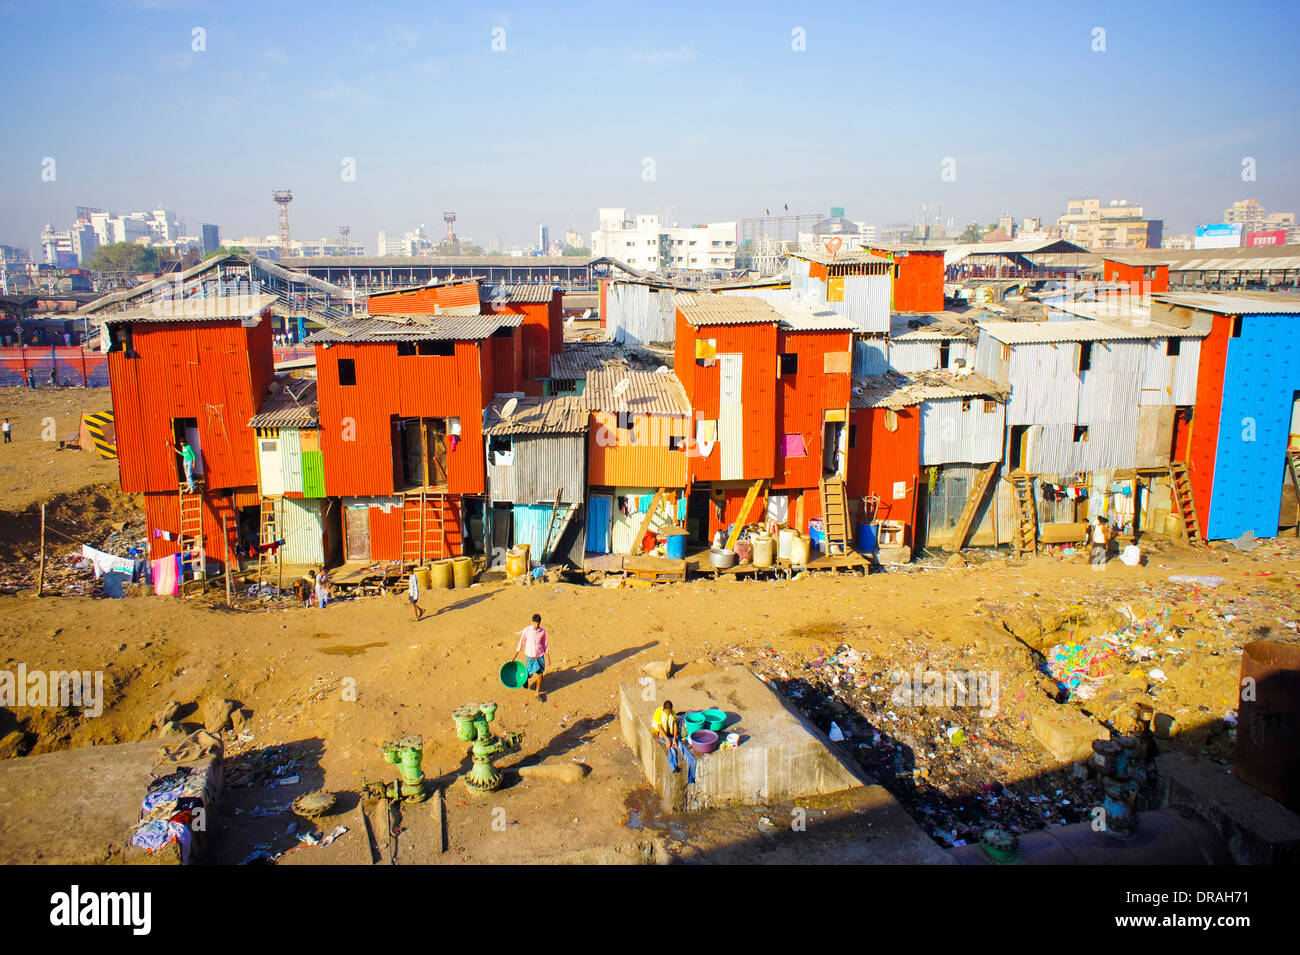 Slum town in Mumbai, India Stock Photo